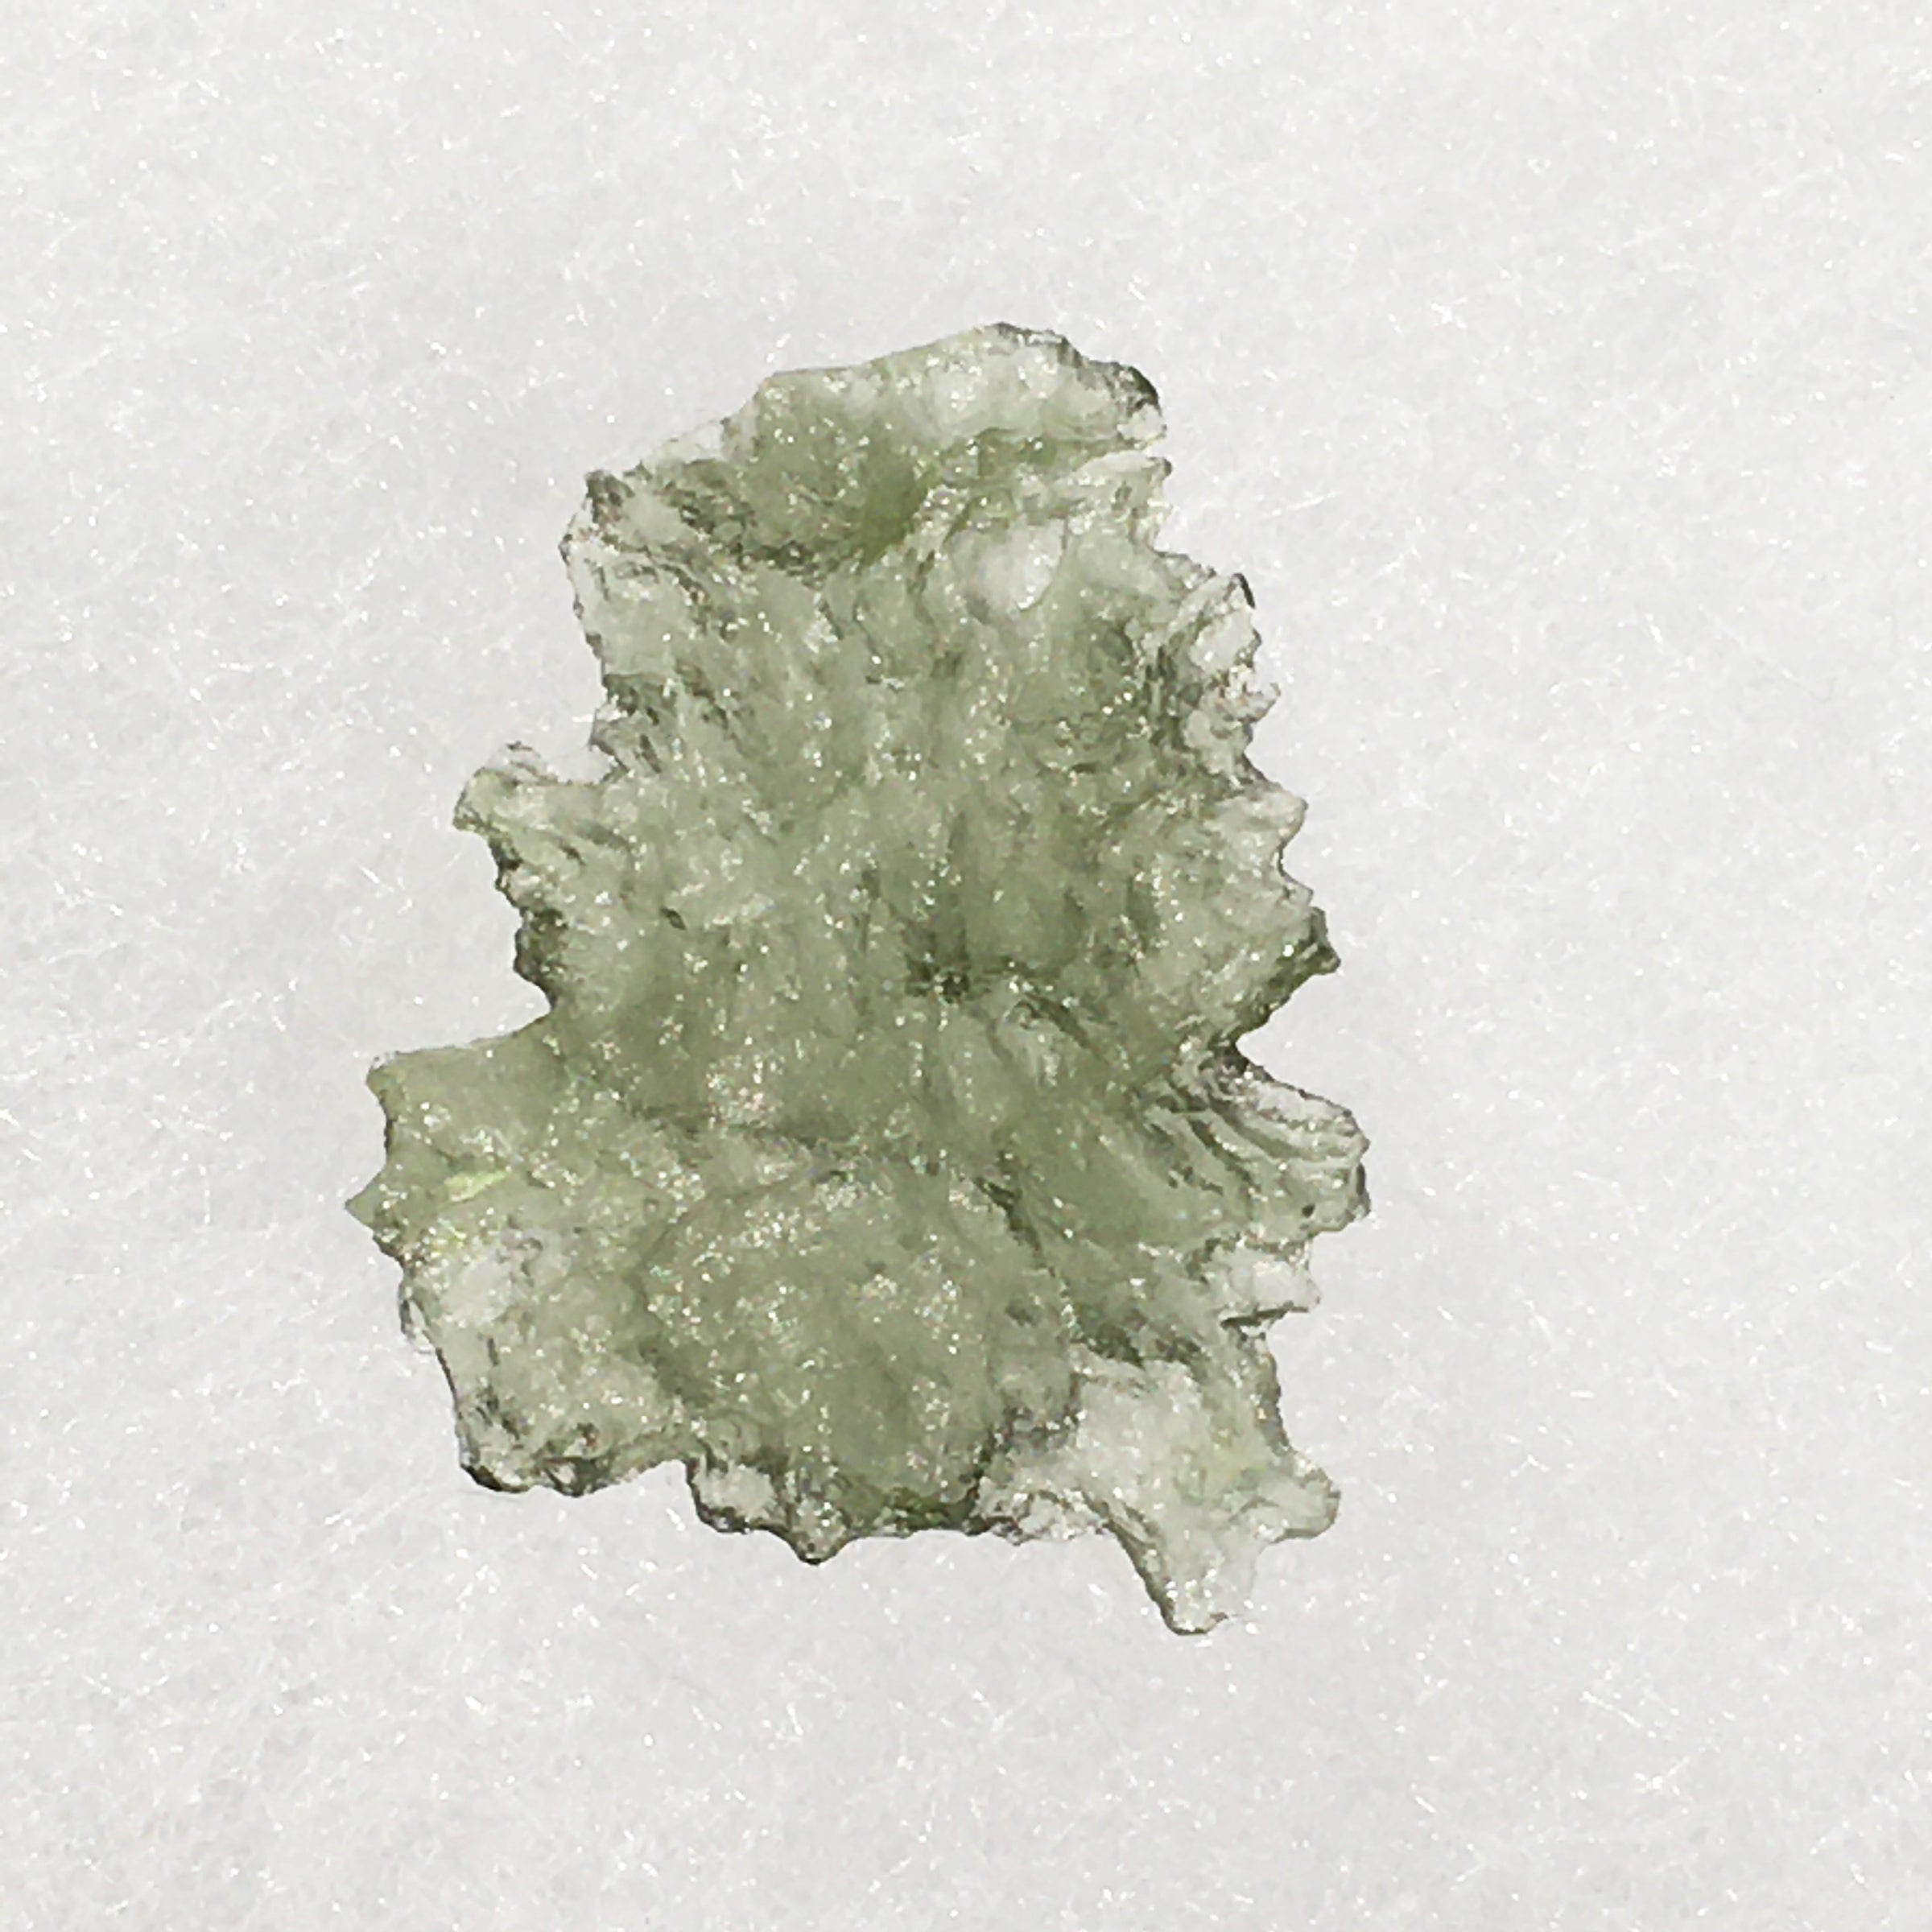 Besednice Moldavite Genuine Certified 0.8 grams BM62-Moldavite Life